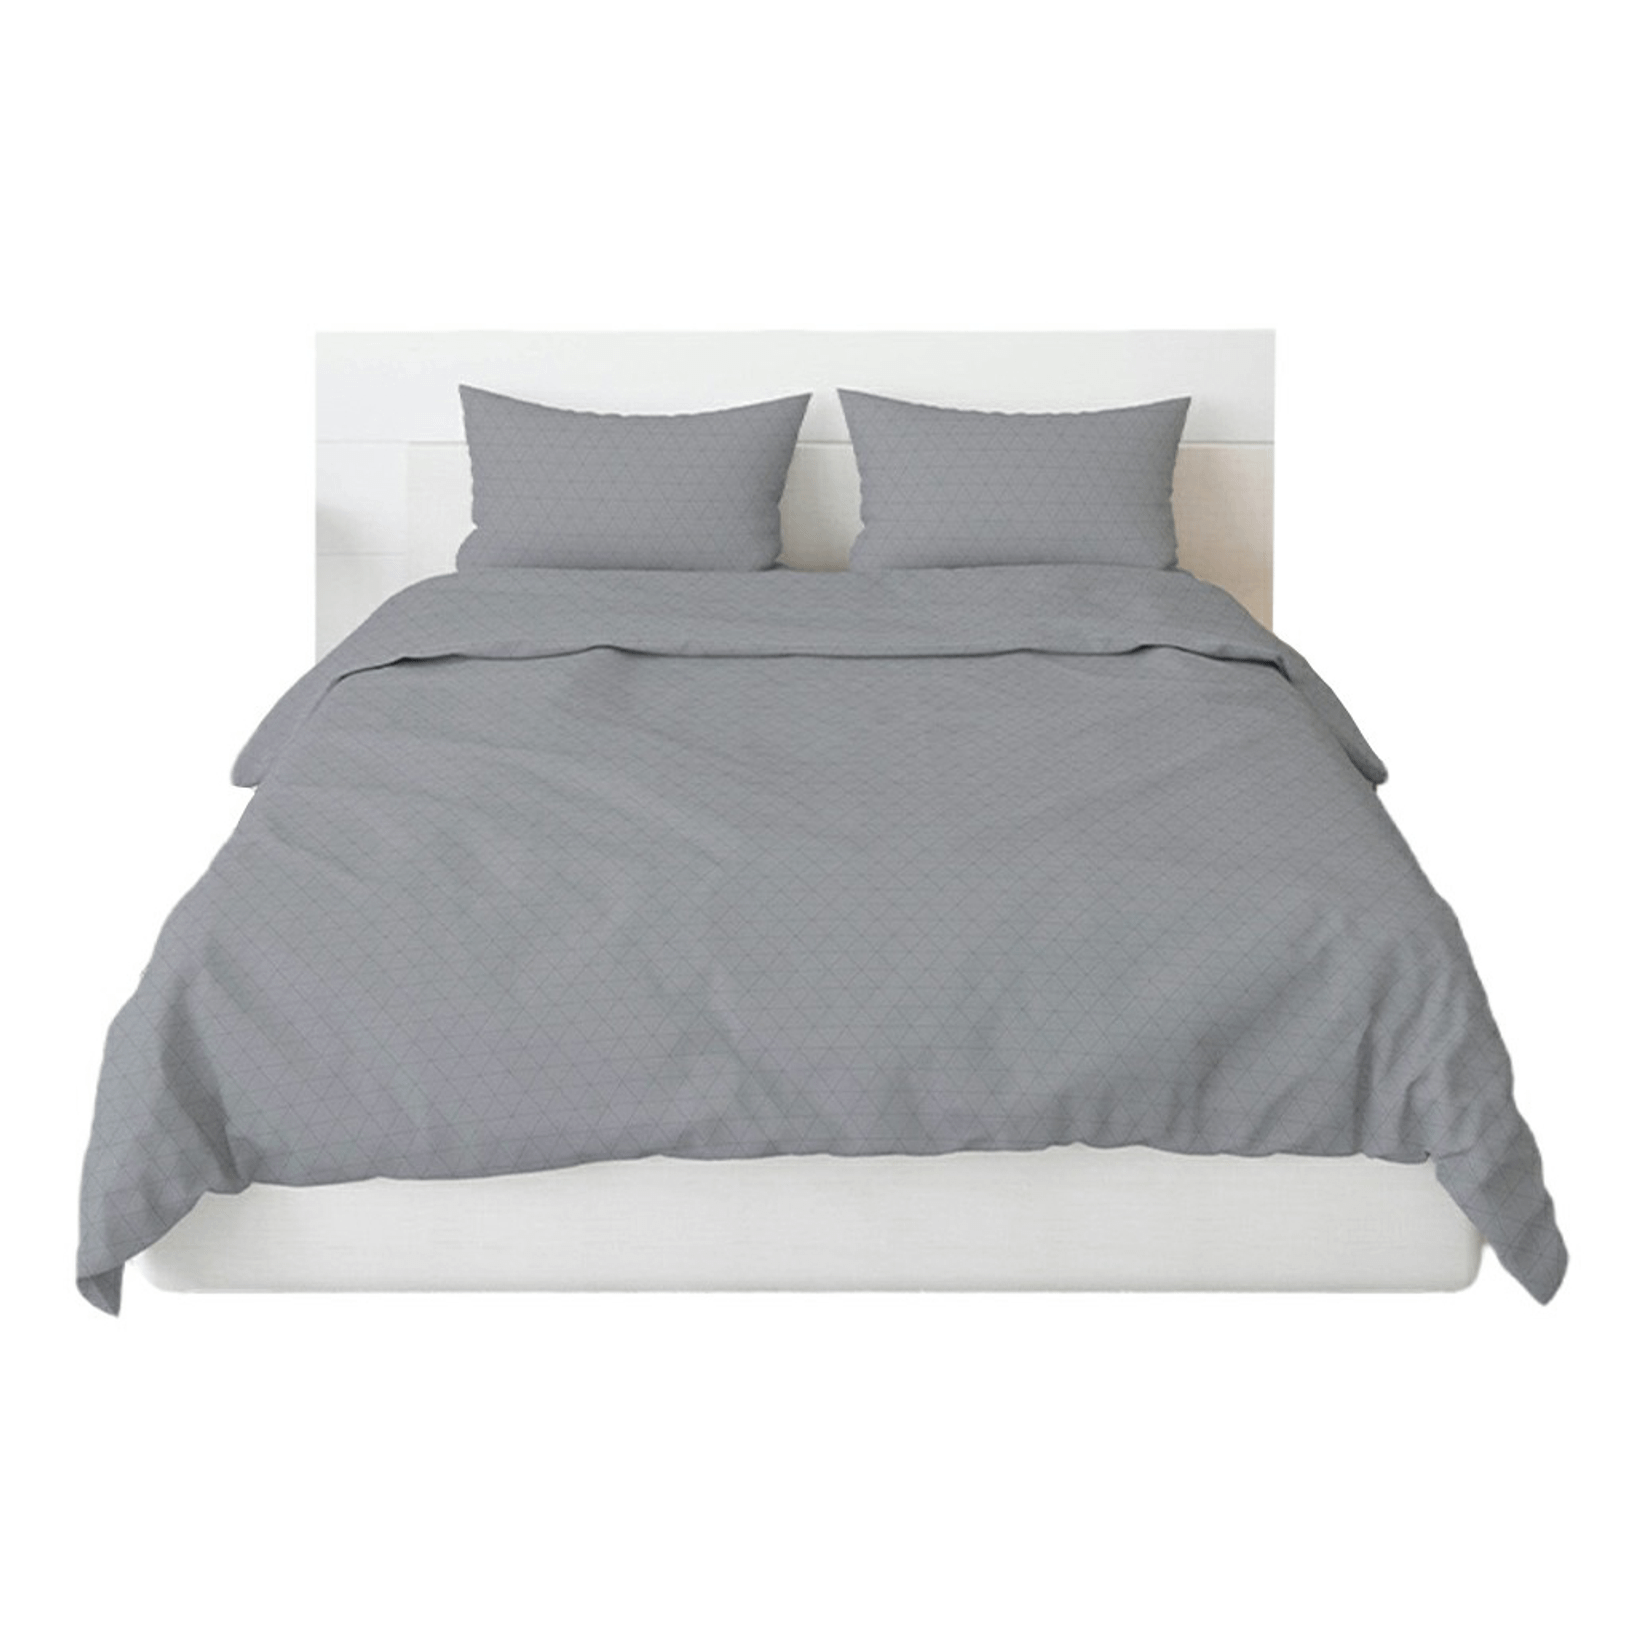 Комплект постельного белья Sole Mio Cleo полутораспальный поплин 50 х 70 см серый